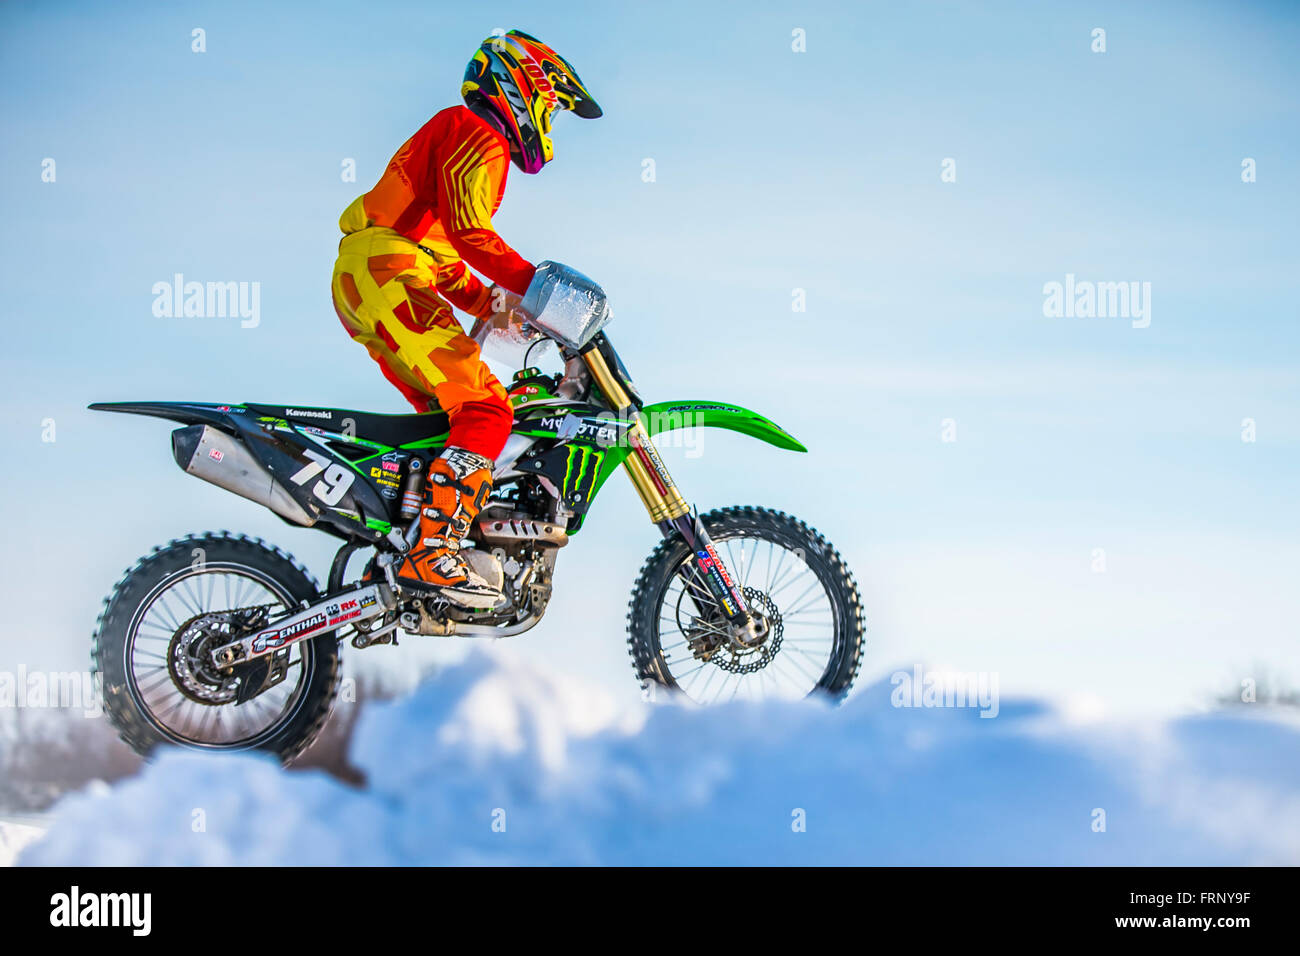 Motocross Rider Con Ropa De Colores Foto de archivo editorial - Imagen de  salto, motociclista: 173105683